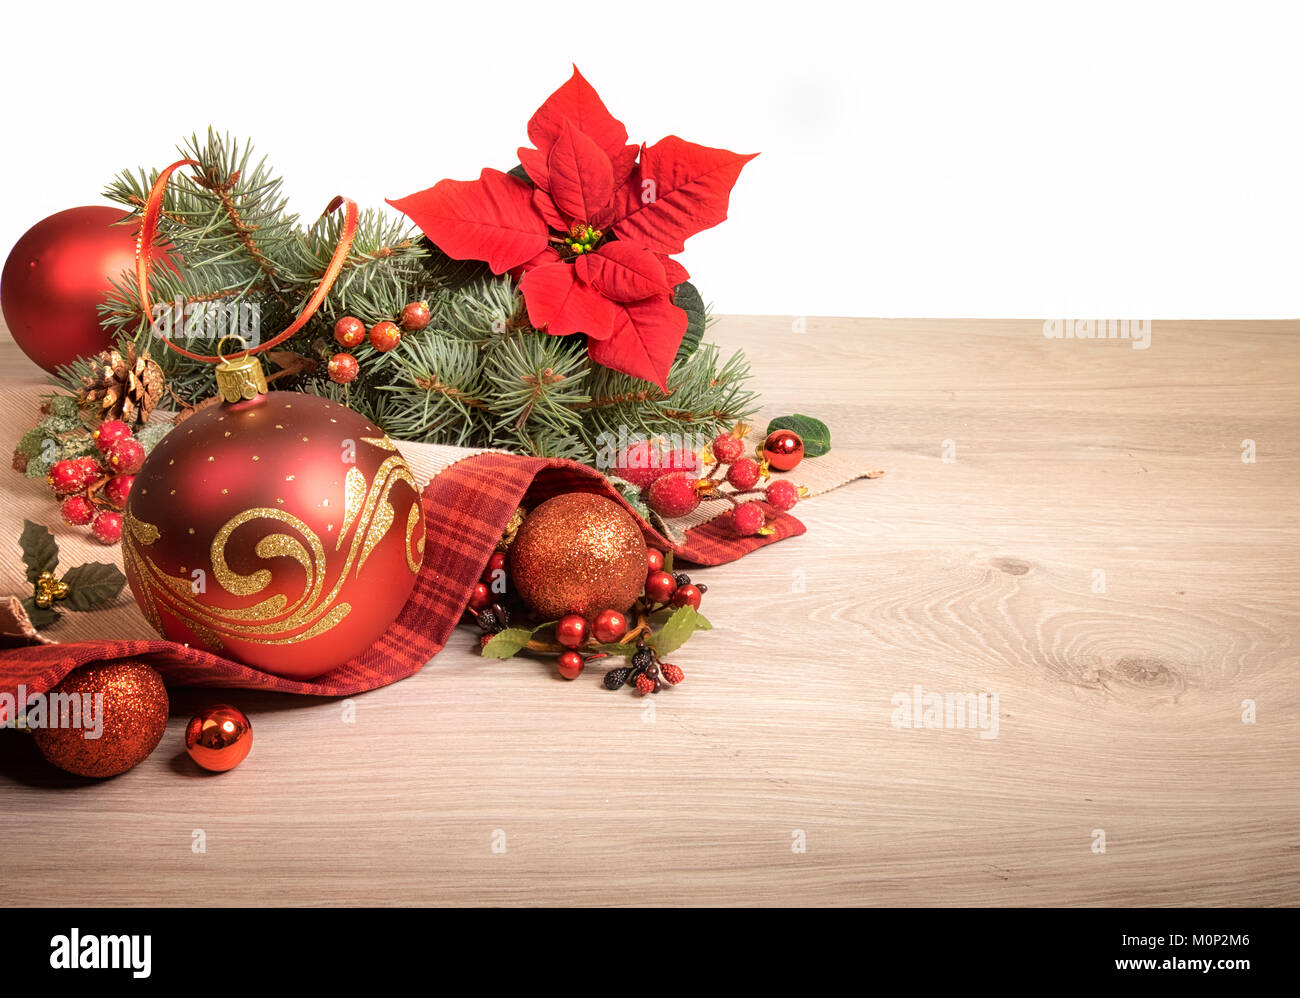 Fond de bois avec poinsettia et arbre de Noël décoré de brindilles, de l'espace texte Banque D'Images